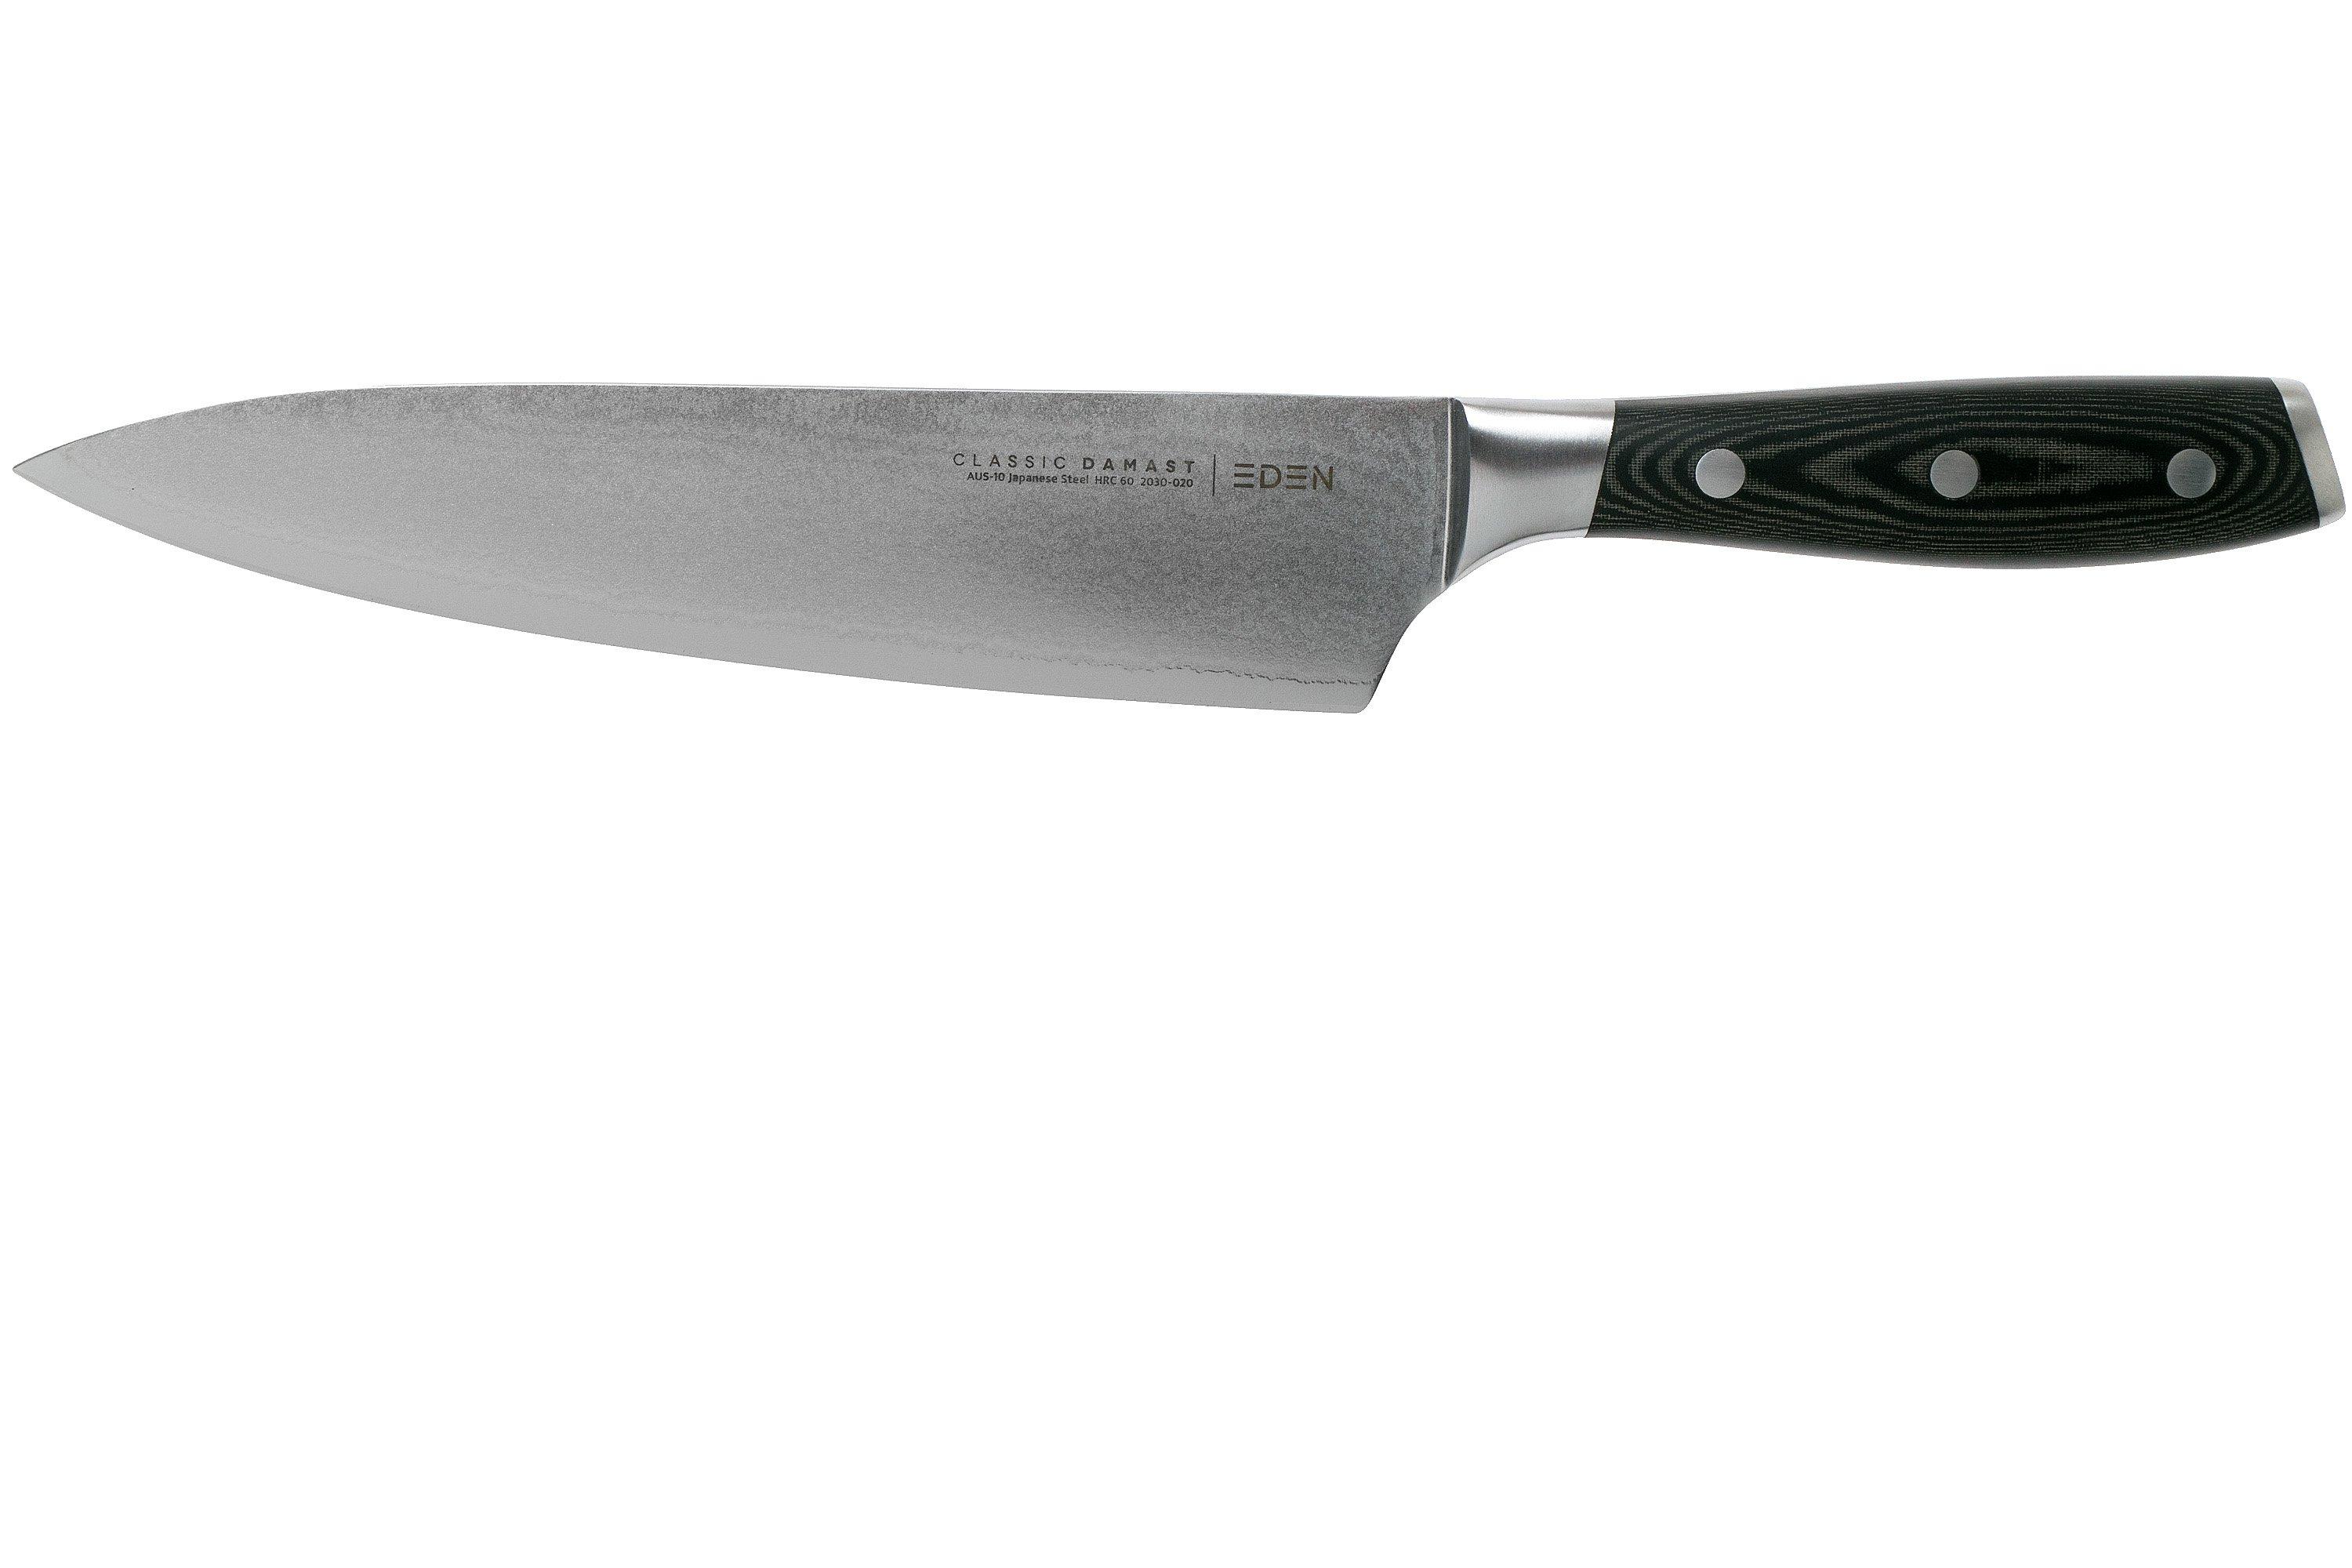 Guide d'achat pour les couteaux de cuisine - Blogue Best Buy